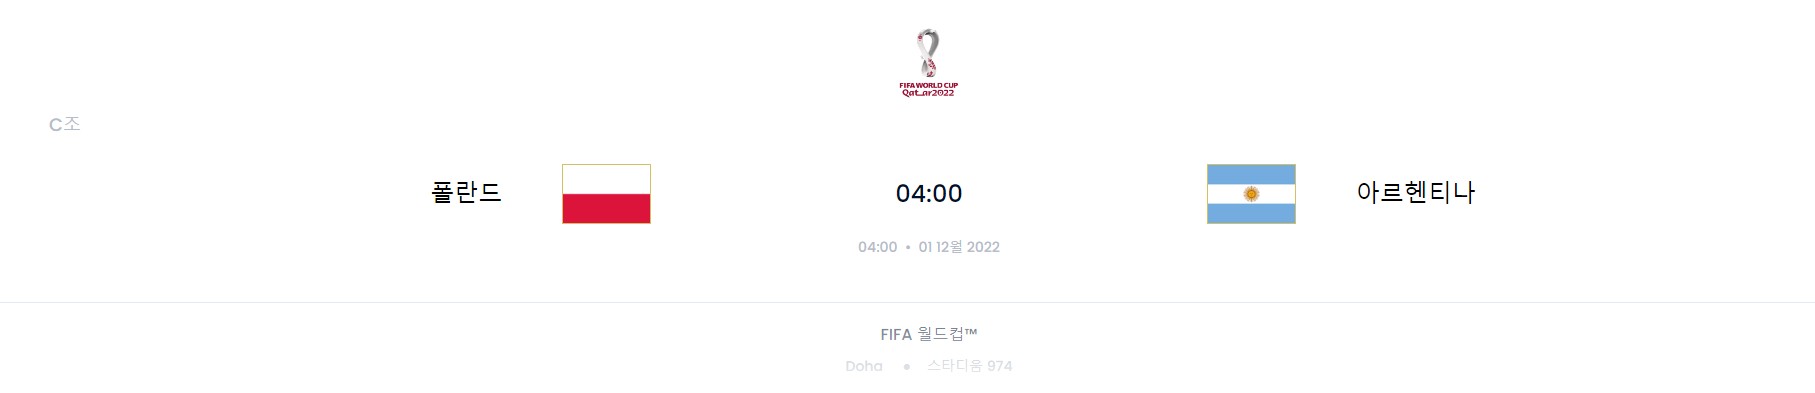 카타르 월드컵 C조 5경기 (폴란드 VS 아르헨티나)